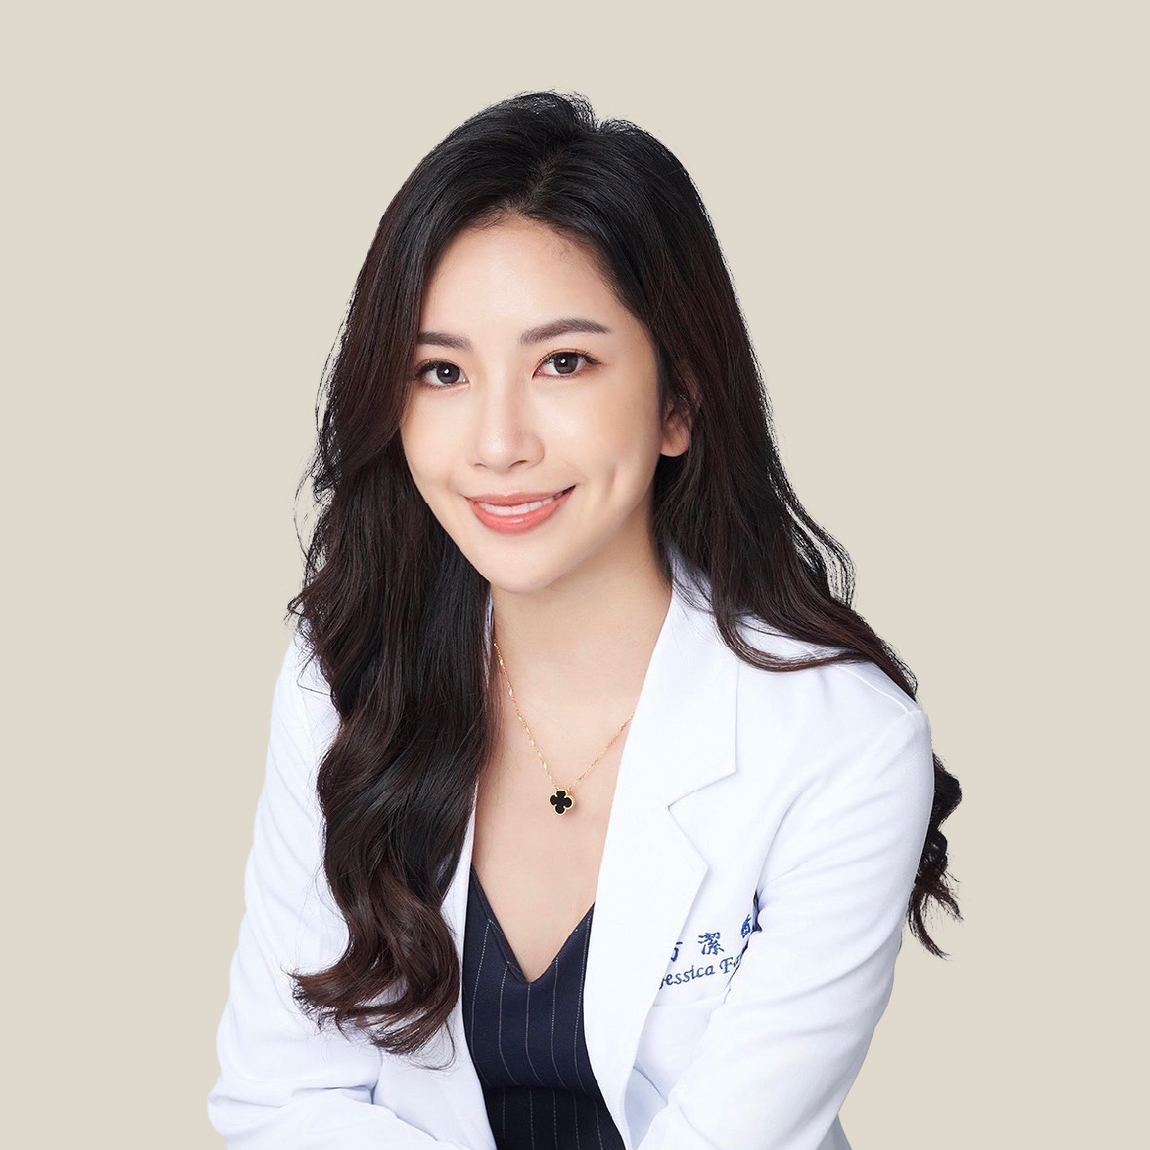 方潔 Jessica Jay Fang, MD, 主治醫師.